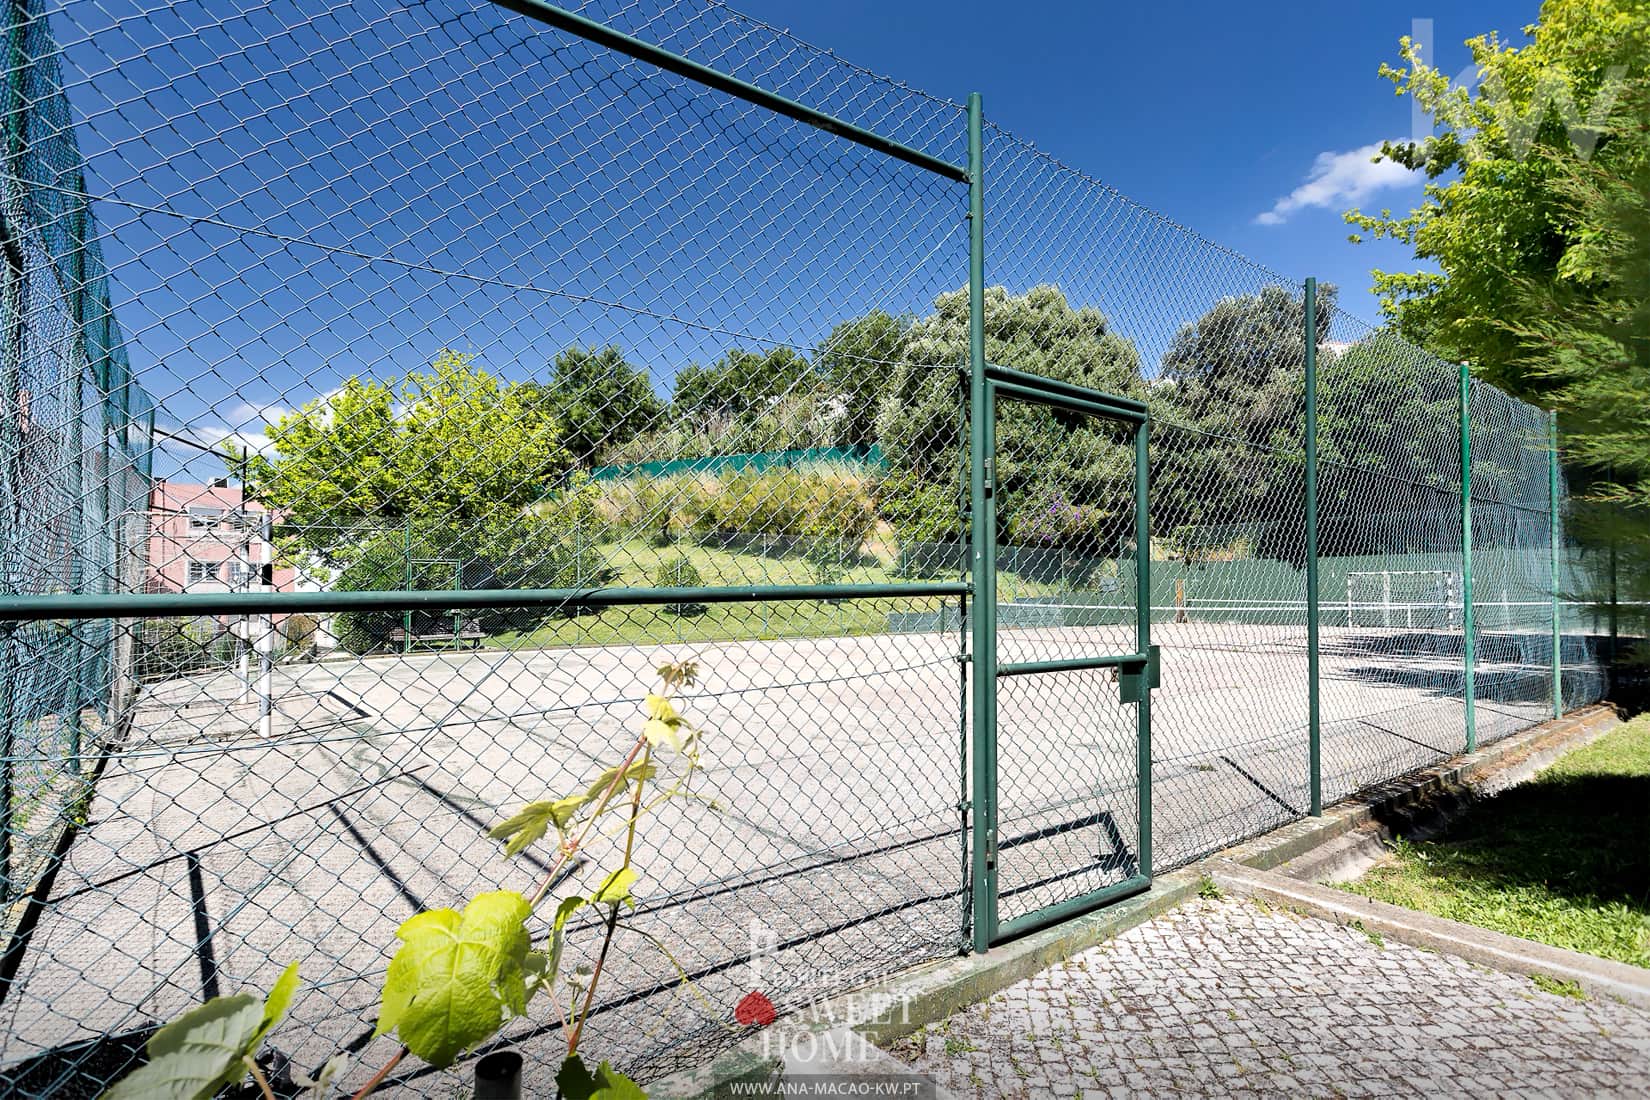 Condominium Tennis/Football Court